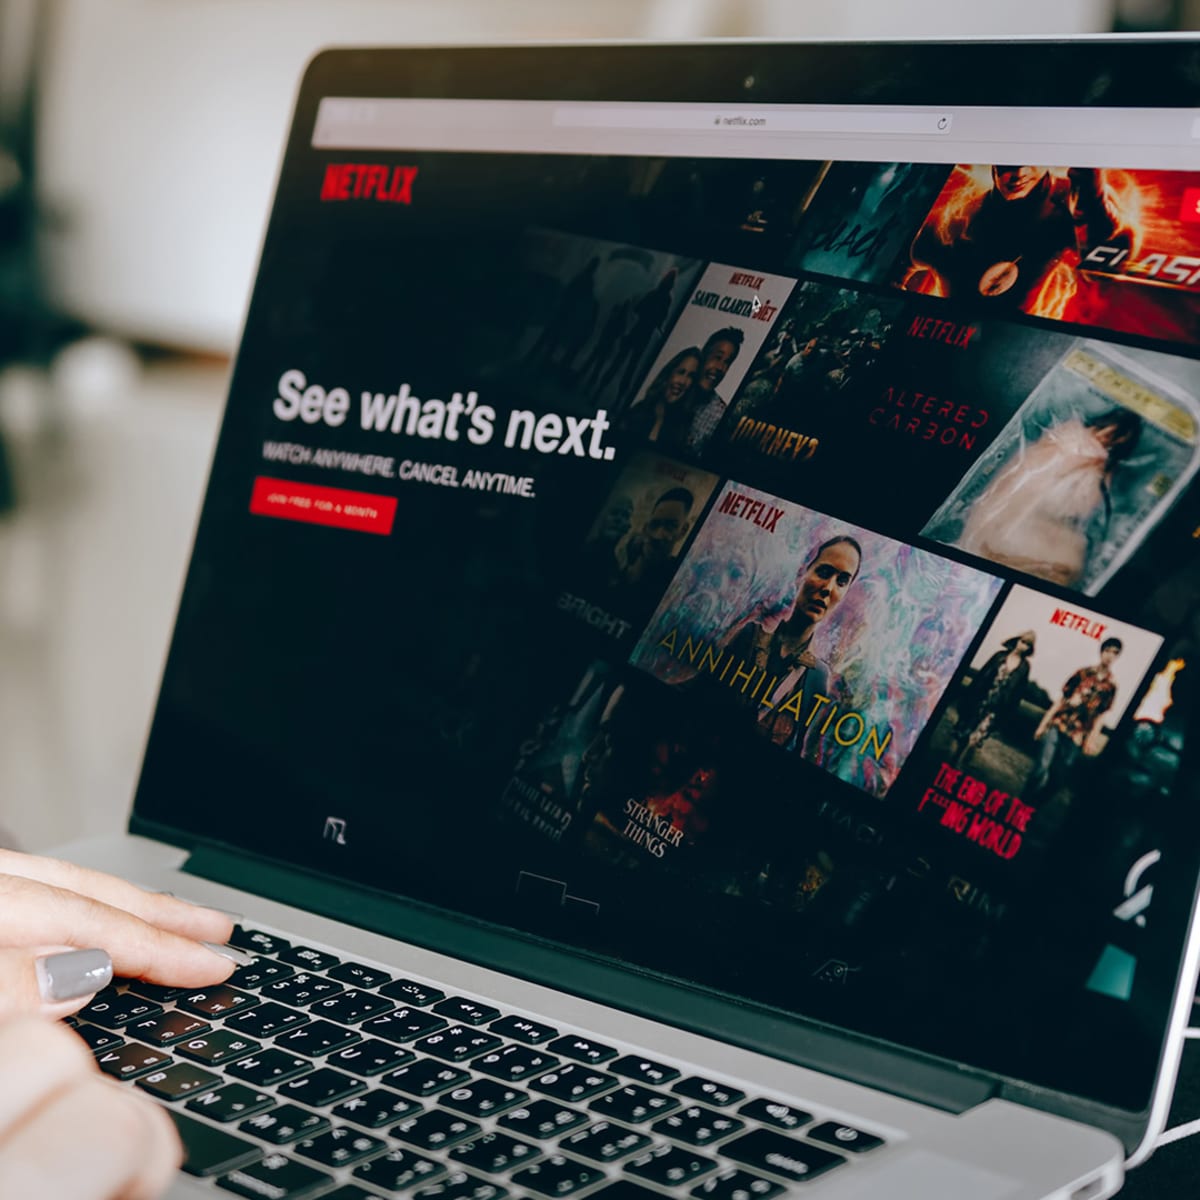 Netflix's Stock Nears A Breaking Point Following Weak Results